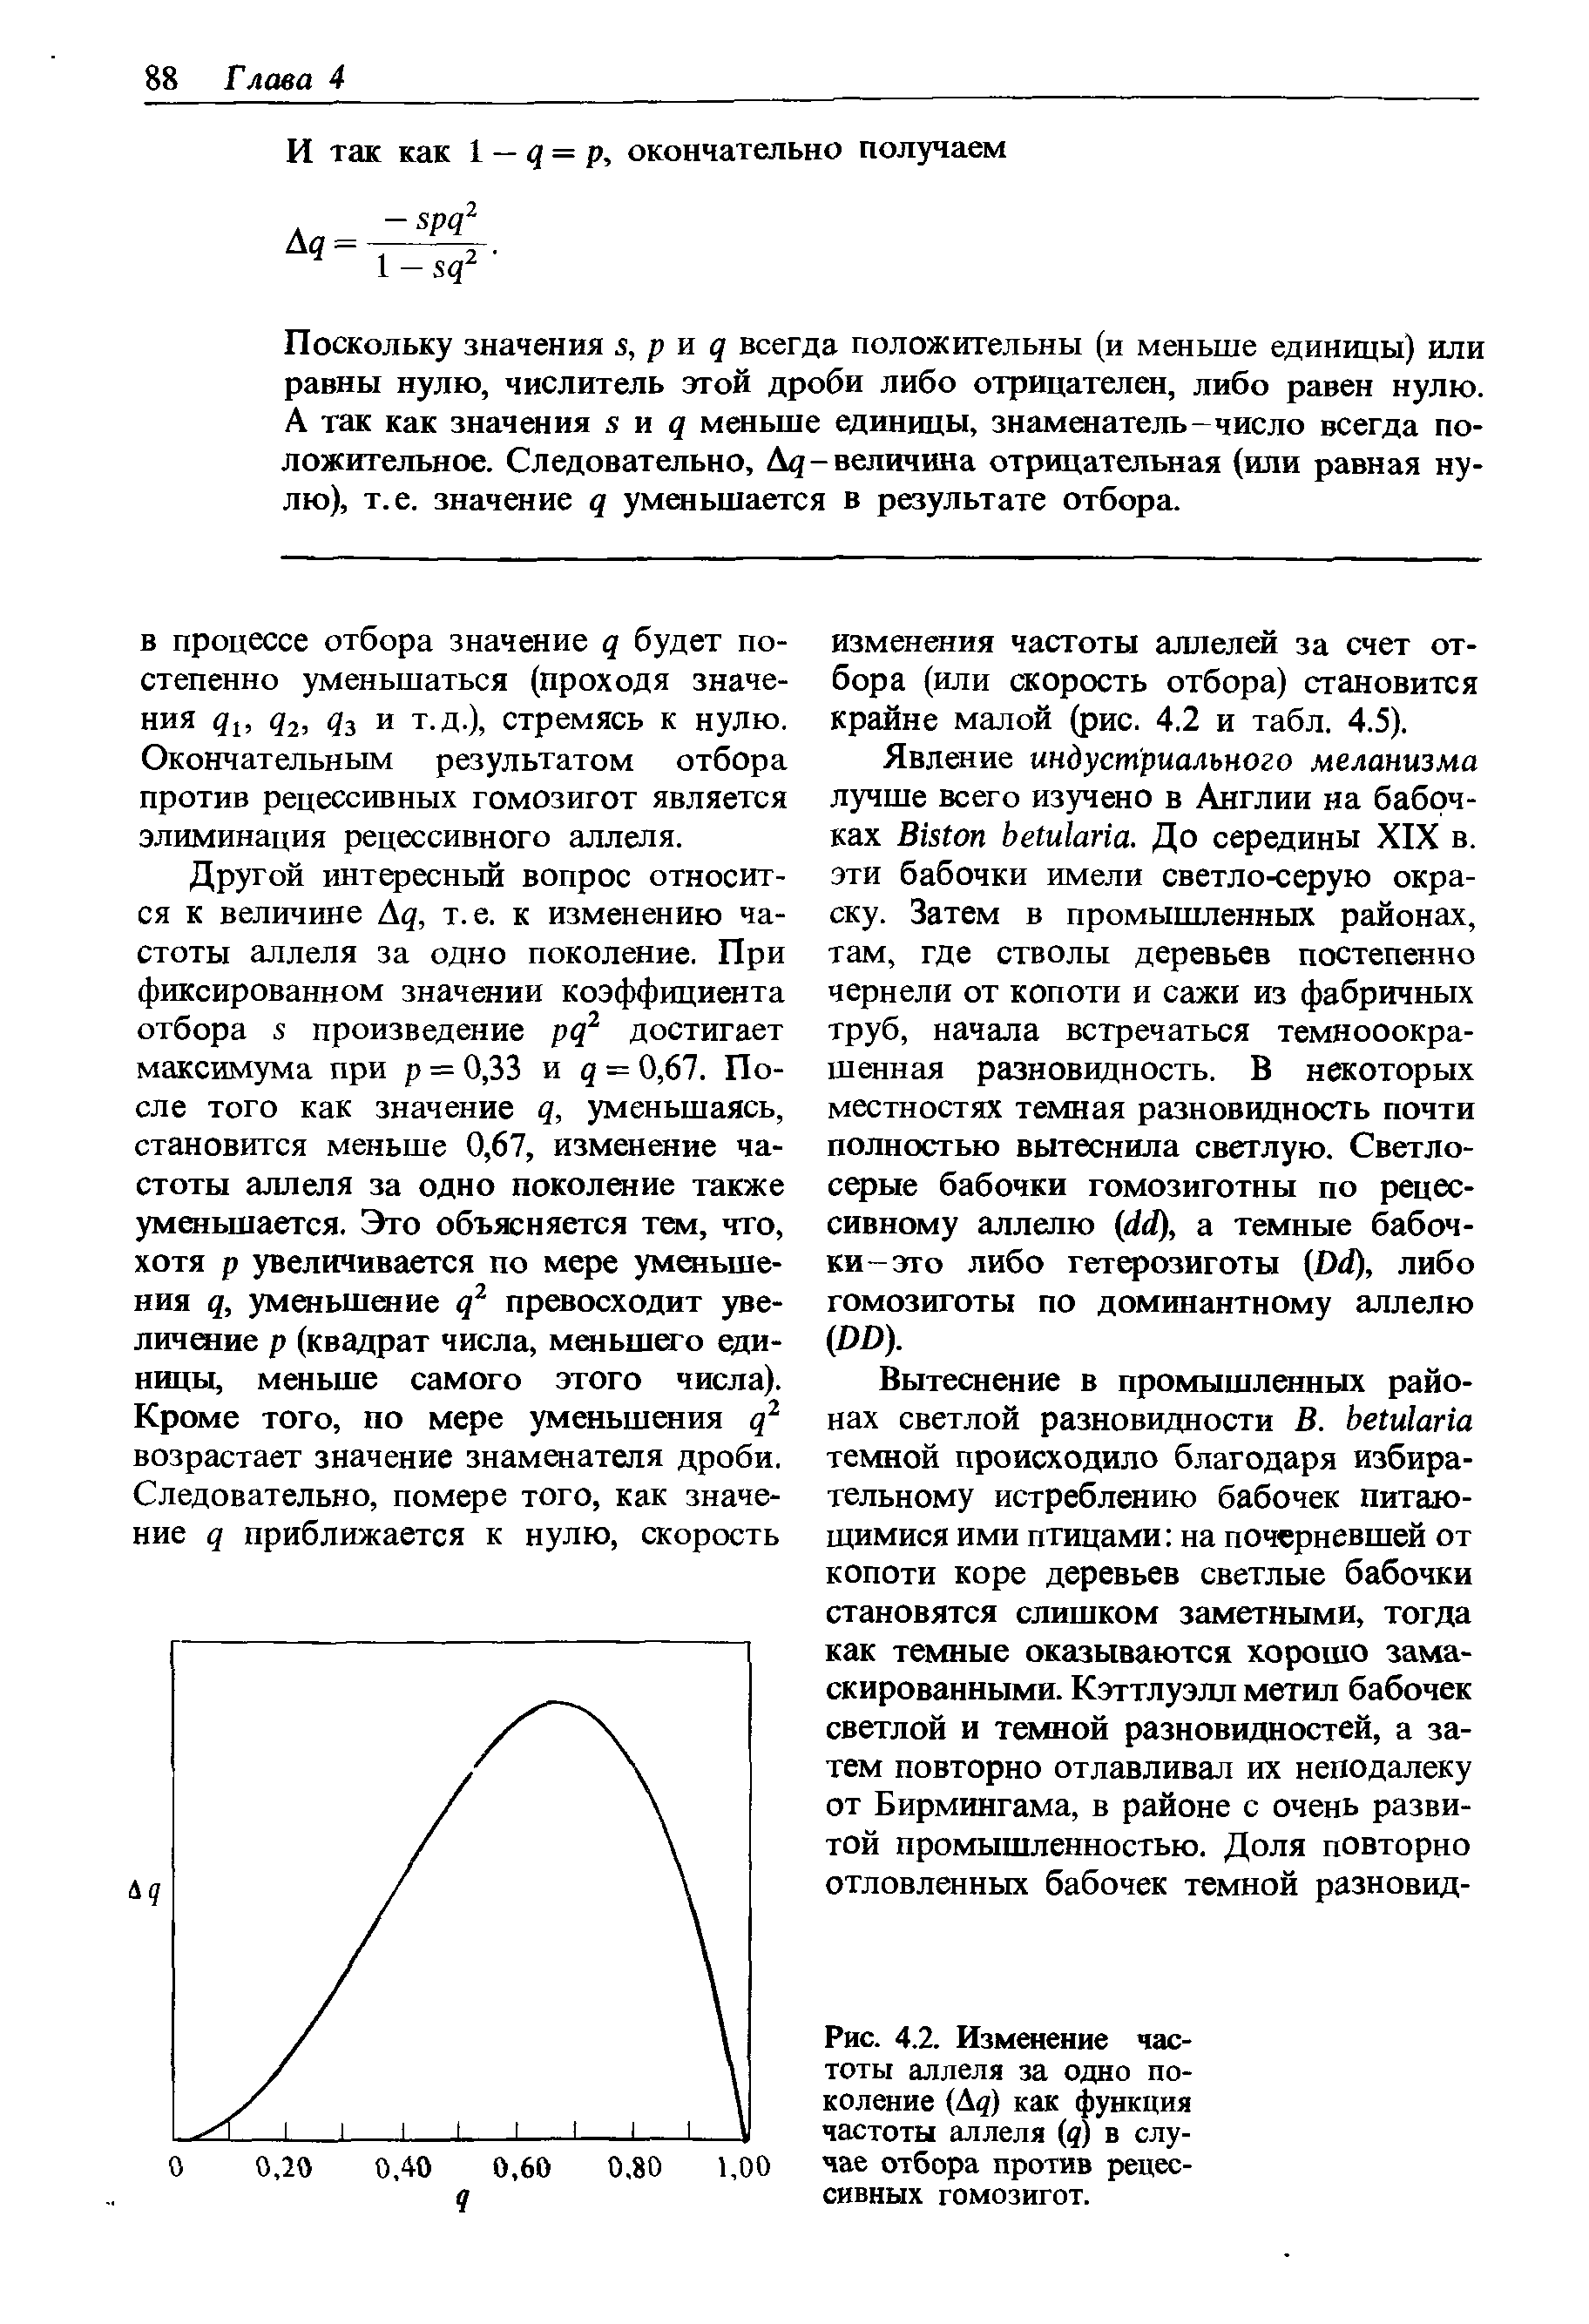 Рис. 4.2. Изменение частоты аллеля за одно поколение (Дд) как функция частоты аллеля (д) в случае отбора против рецессивных гомозигот.